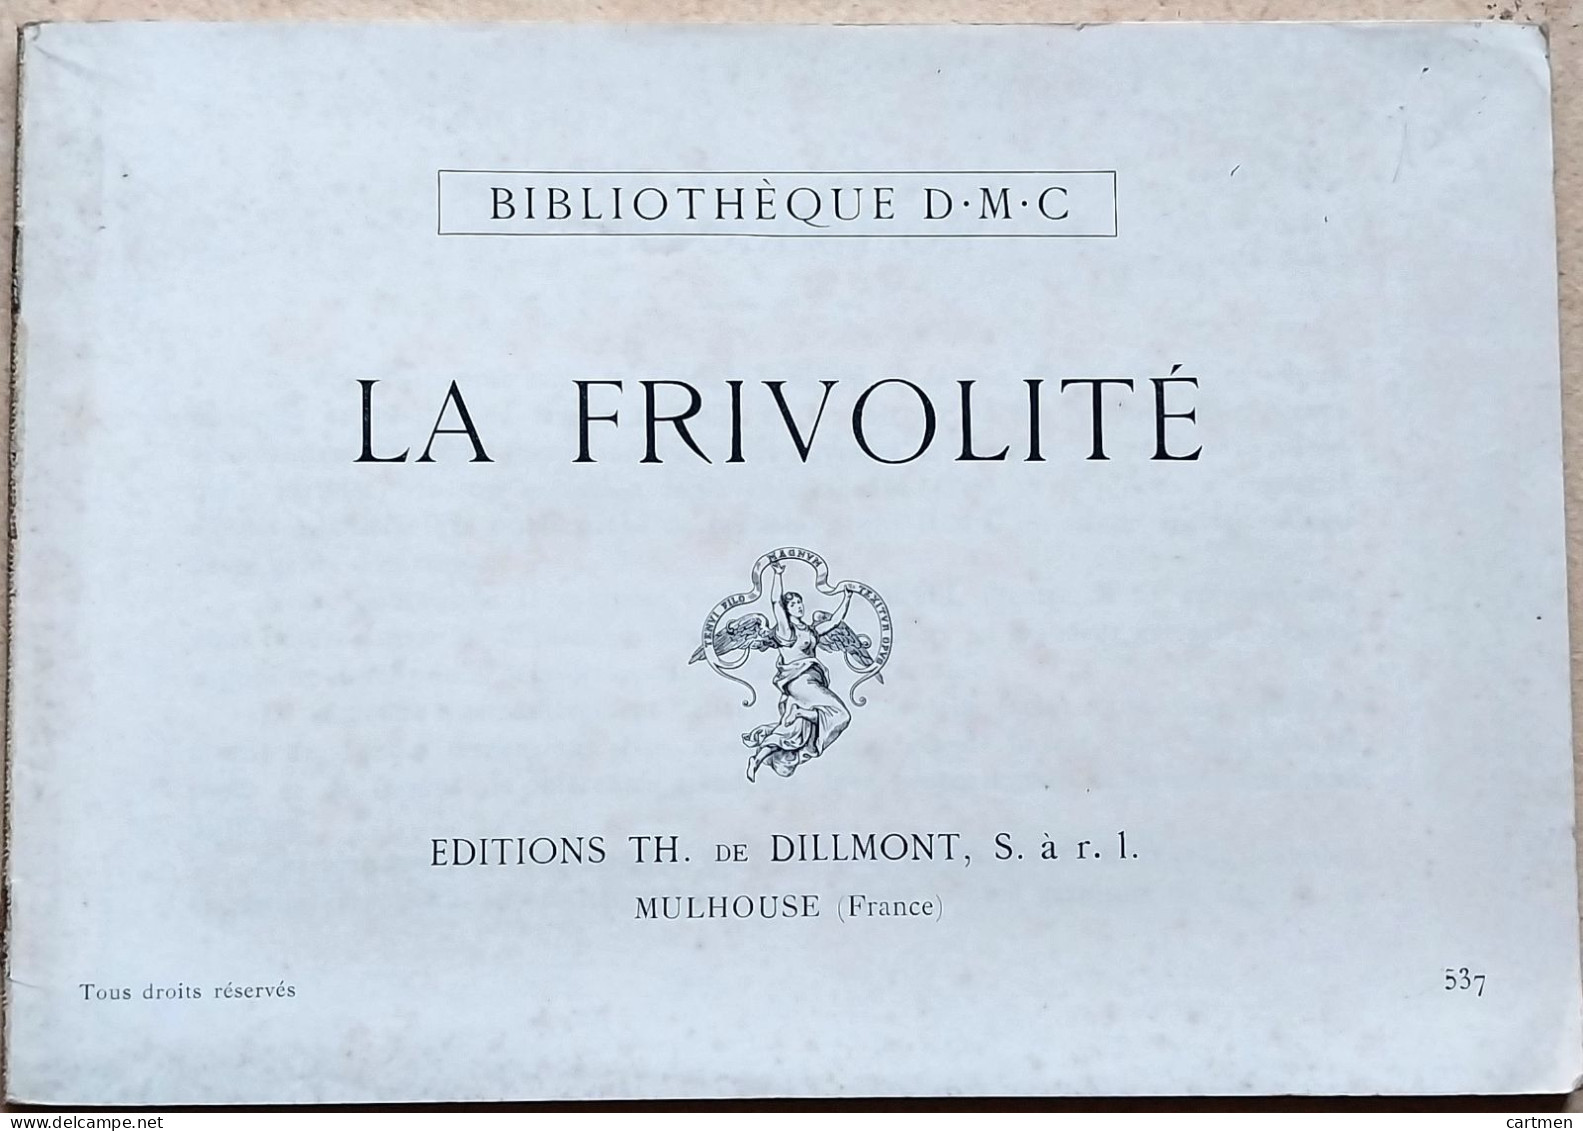 BRODERIE DENTELLE POINT DE CROIX  BIBLIOTHEQUE DMC DILLMONT LA FRIVOLITE ALBUM ETAT NEUF - Point De Croix